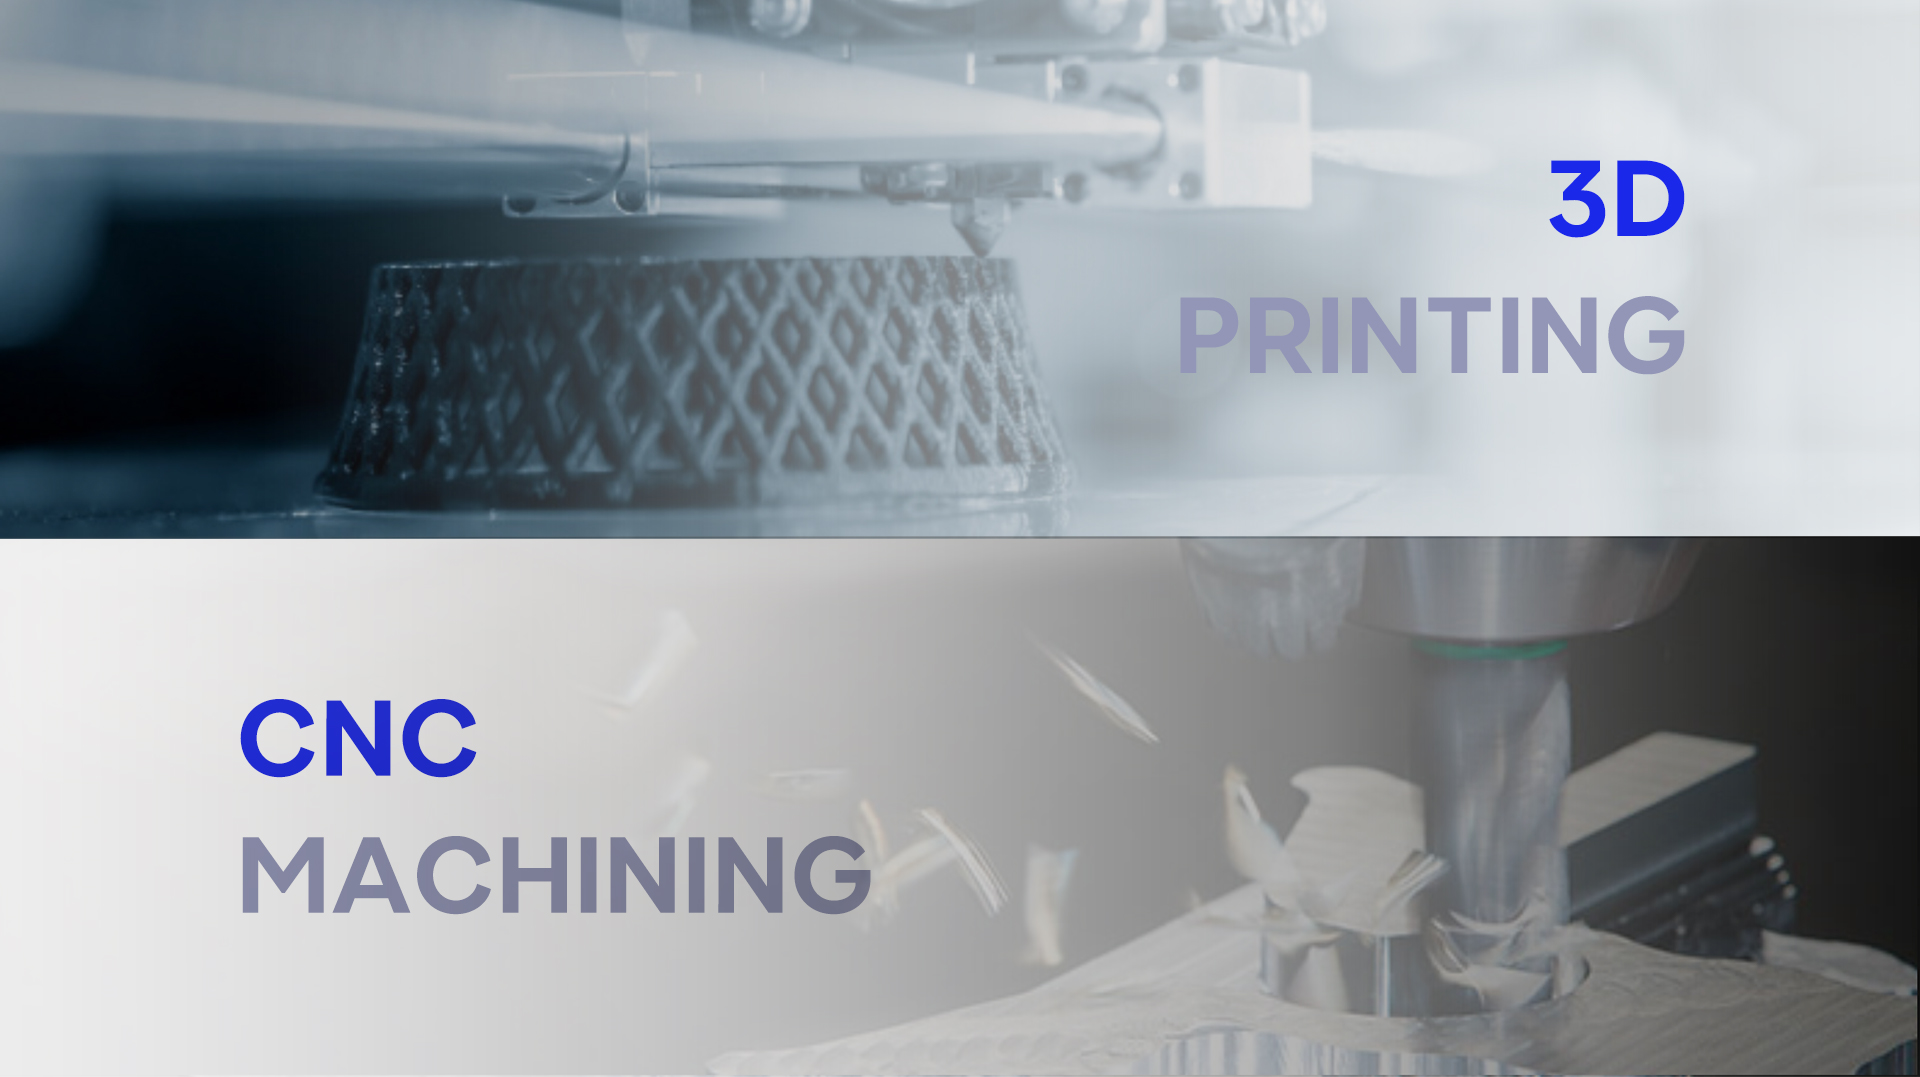 CNC machining or 3D printing